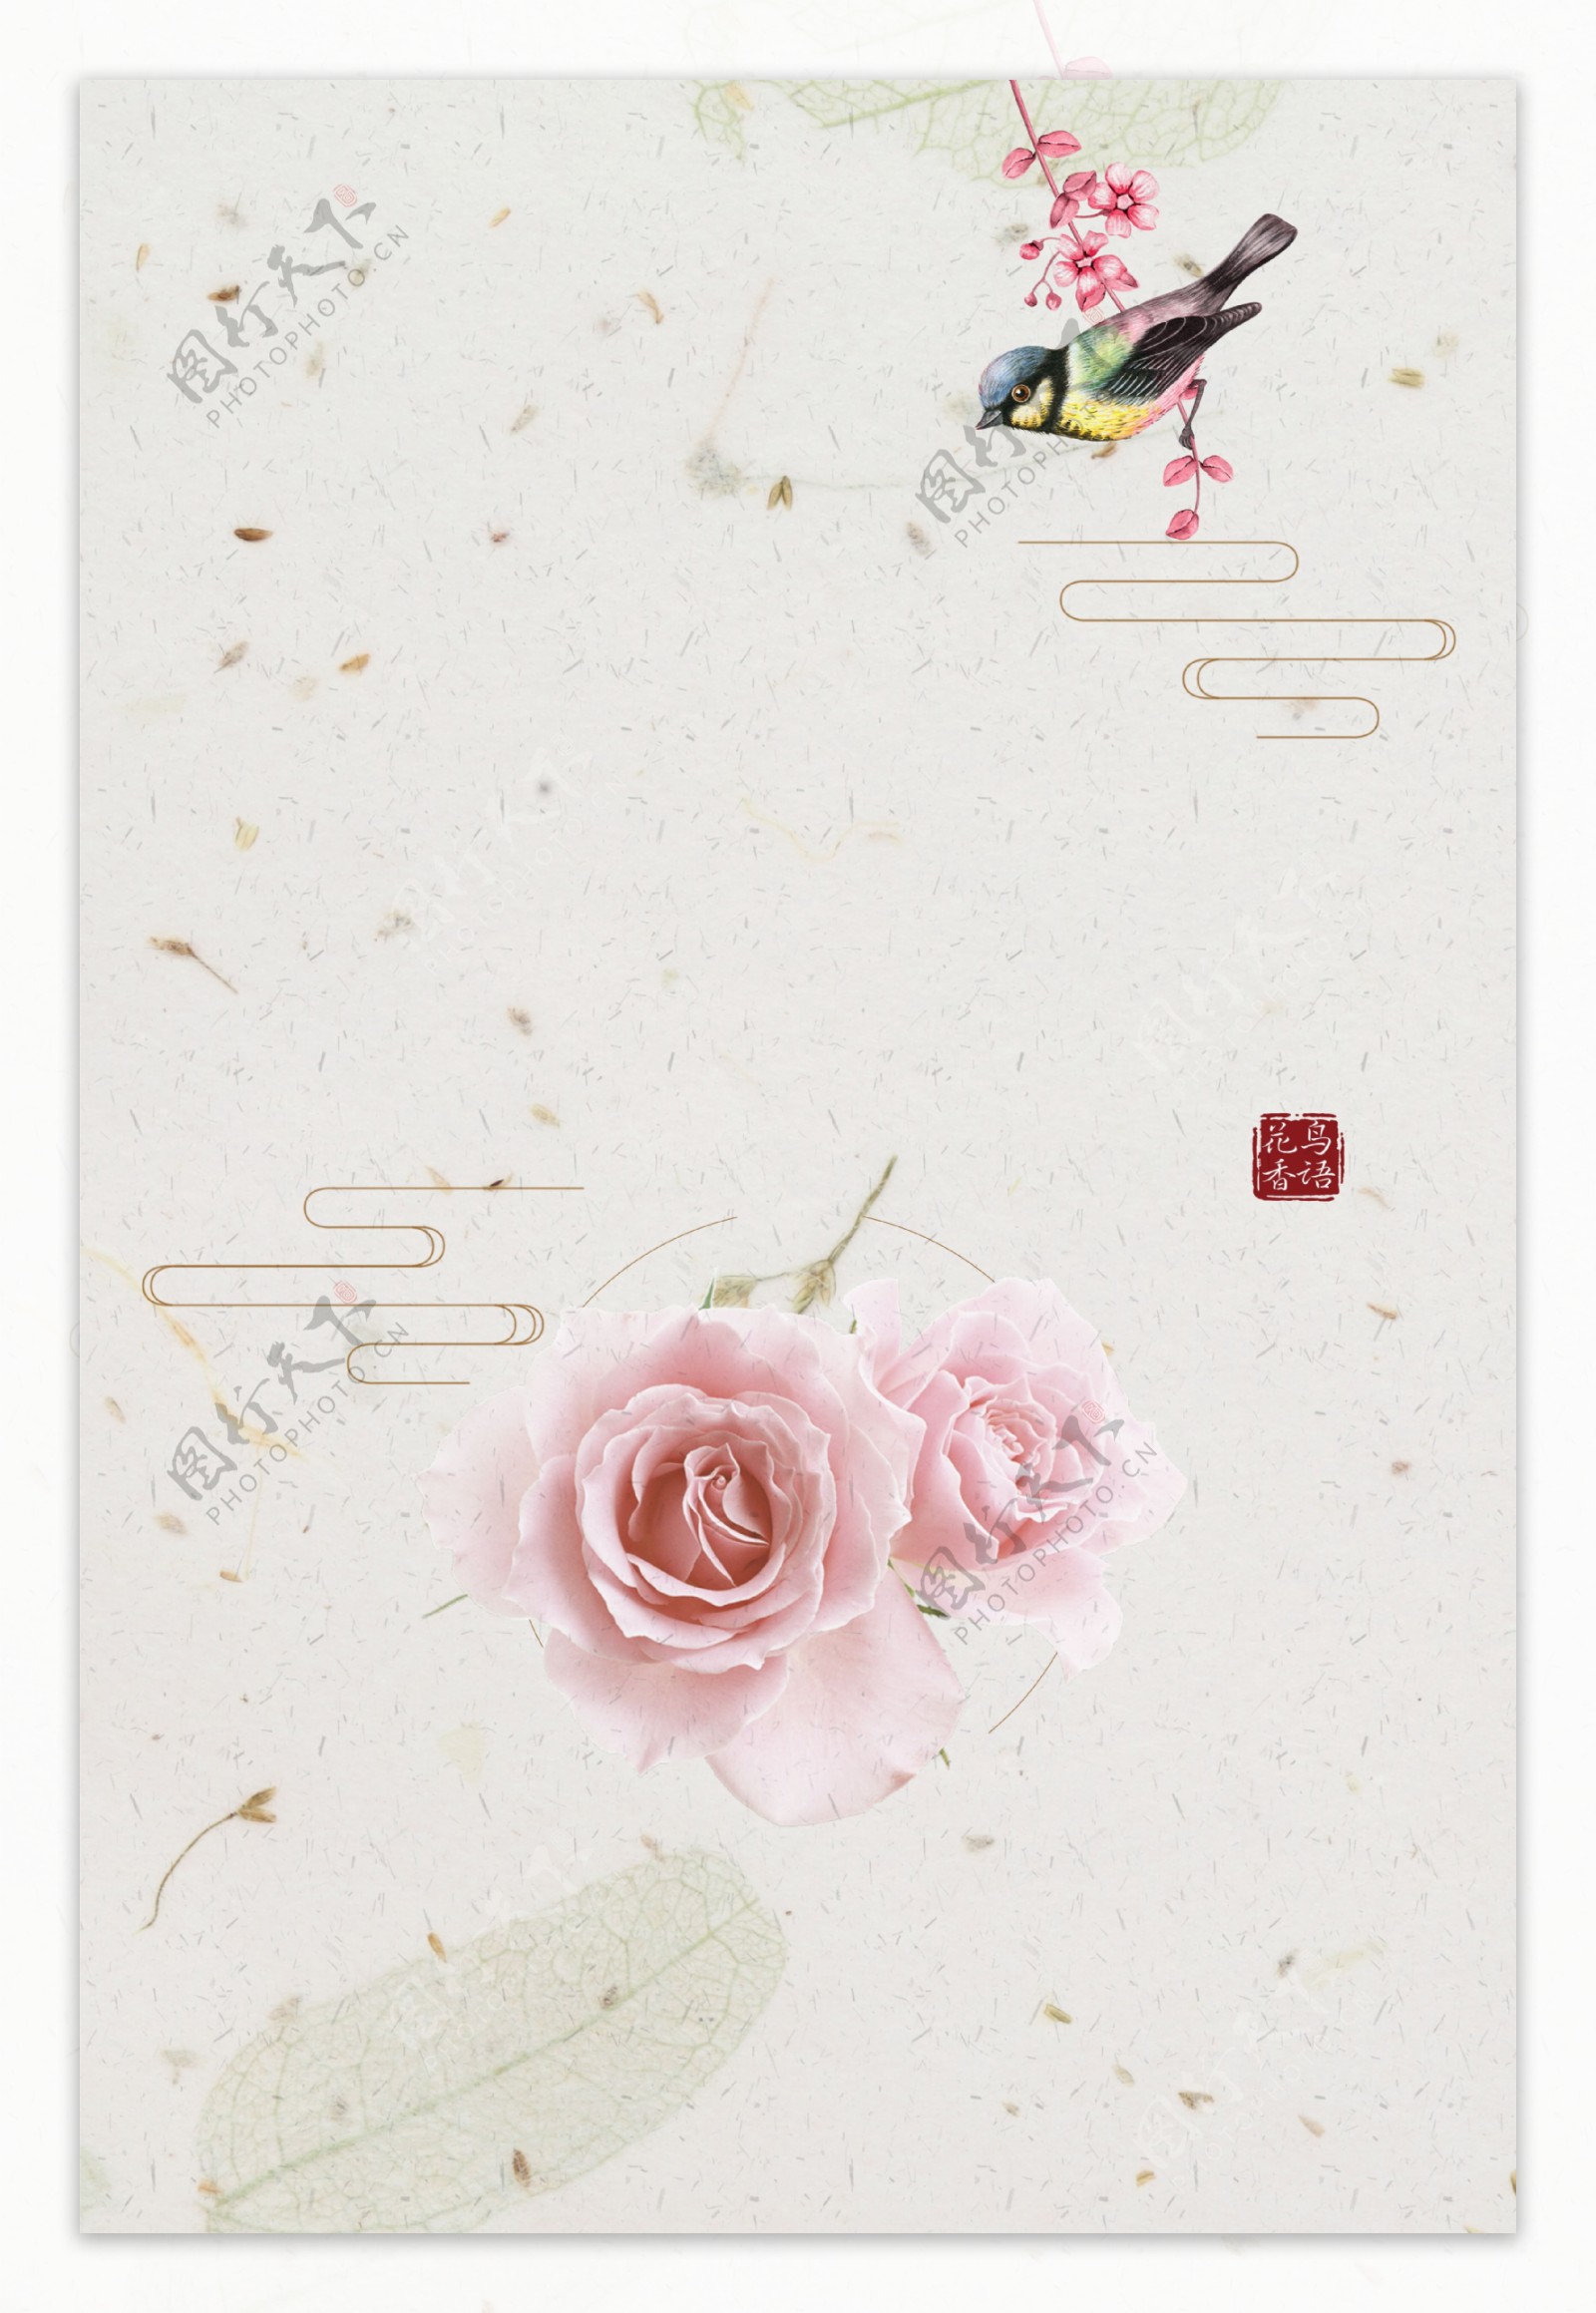 唯美粉色玫瑰花朵小鸟背景素材